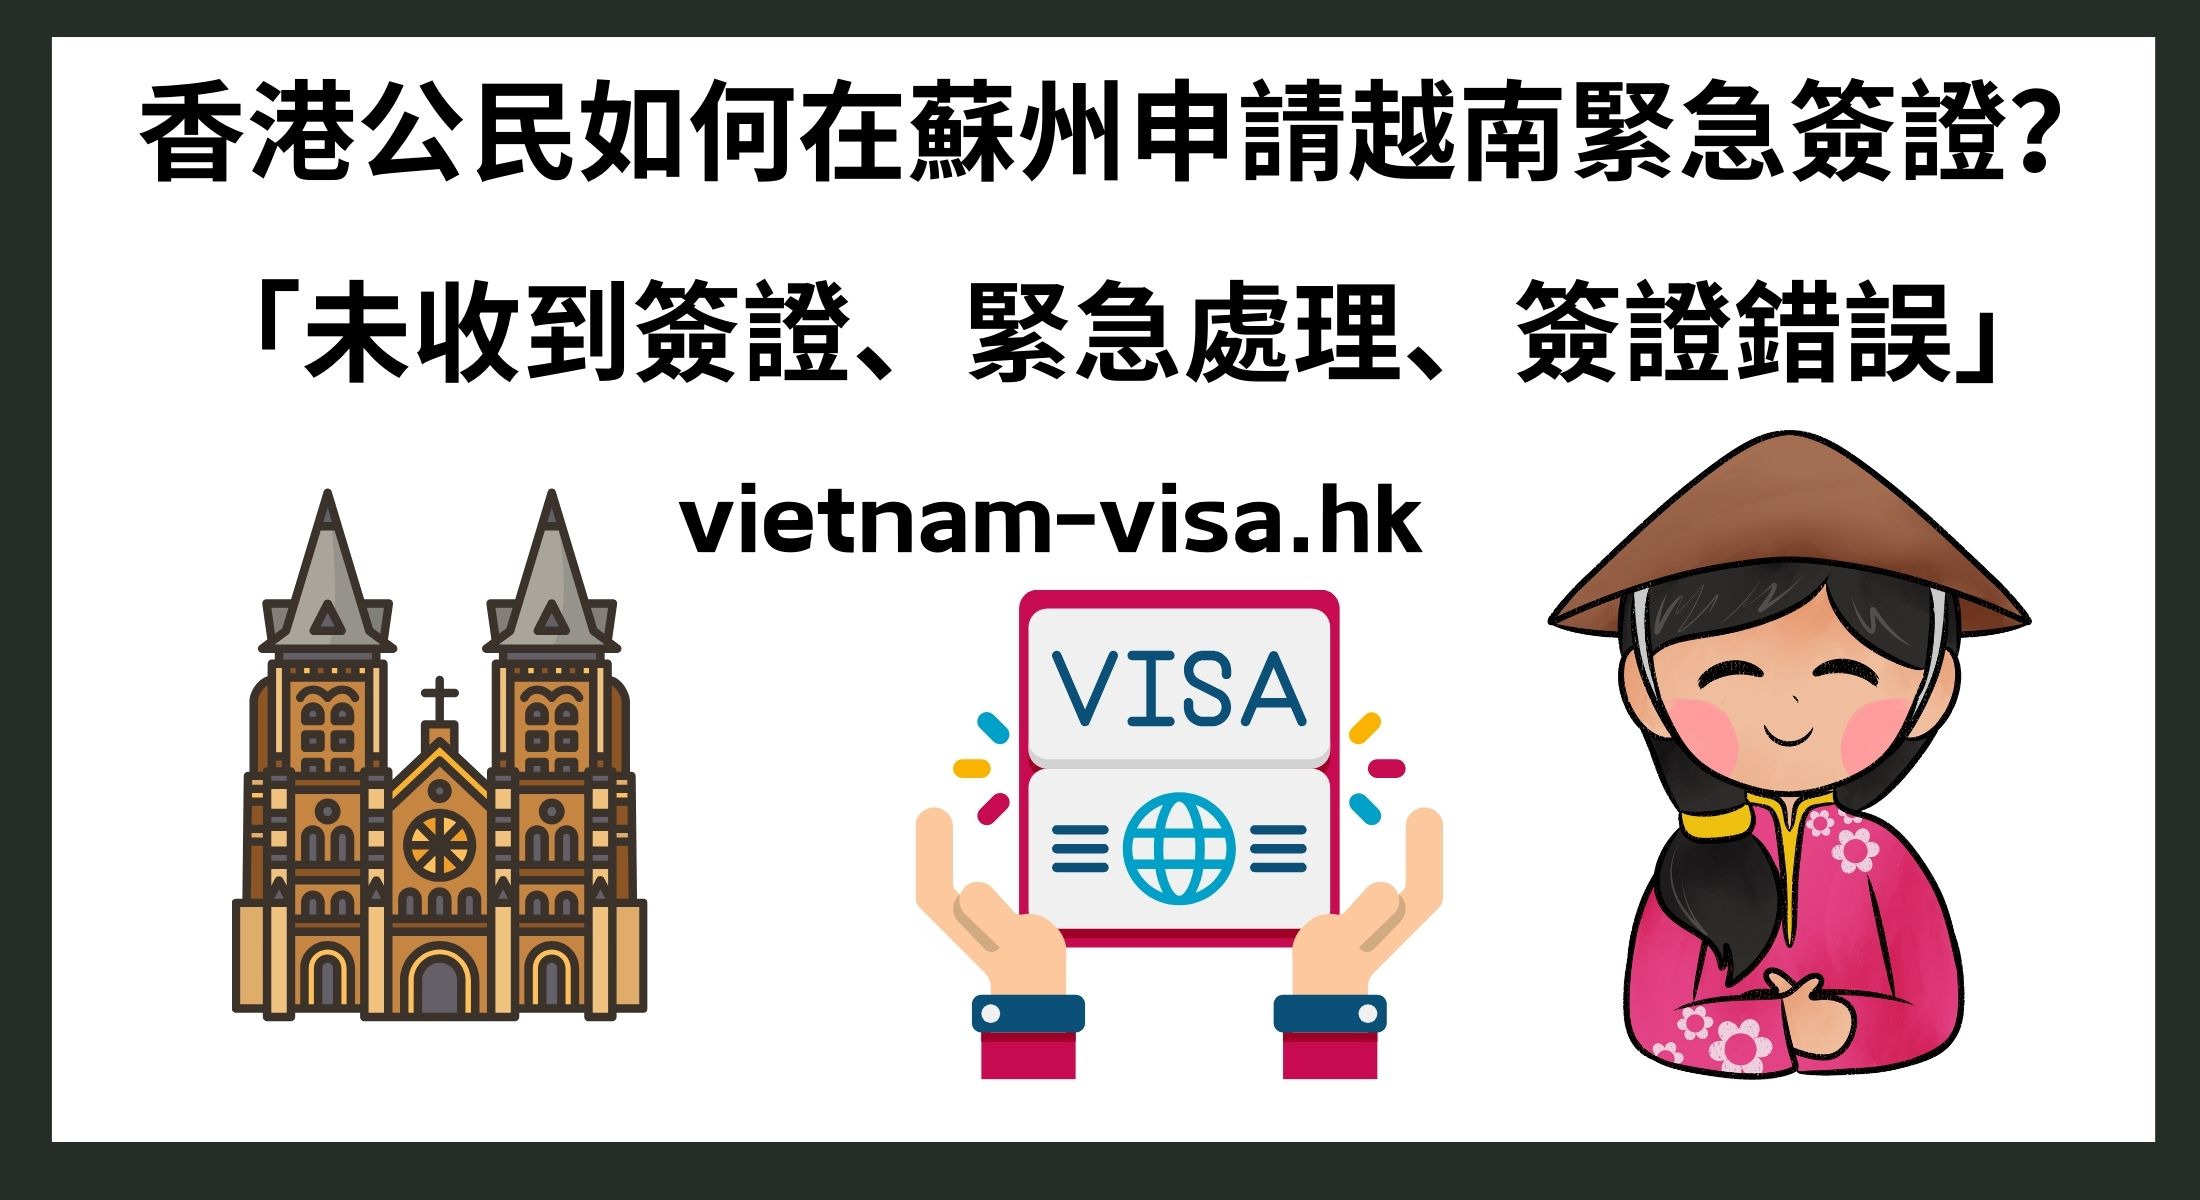 香港公民如何在蘇州申請越南緊急簽證？ 「未收到簽證、緊急處理、簽證錯誤」